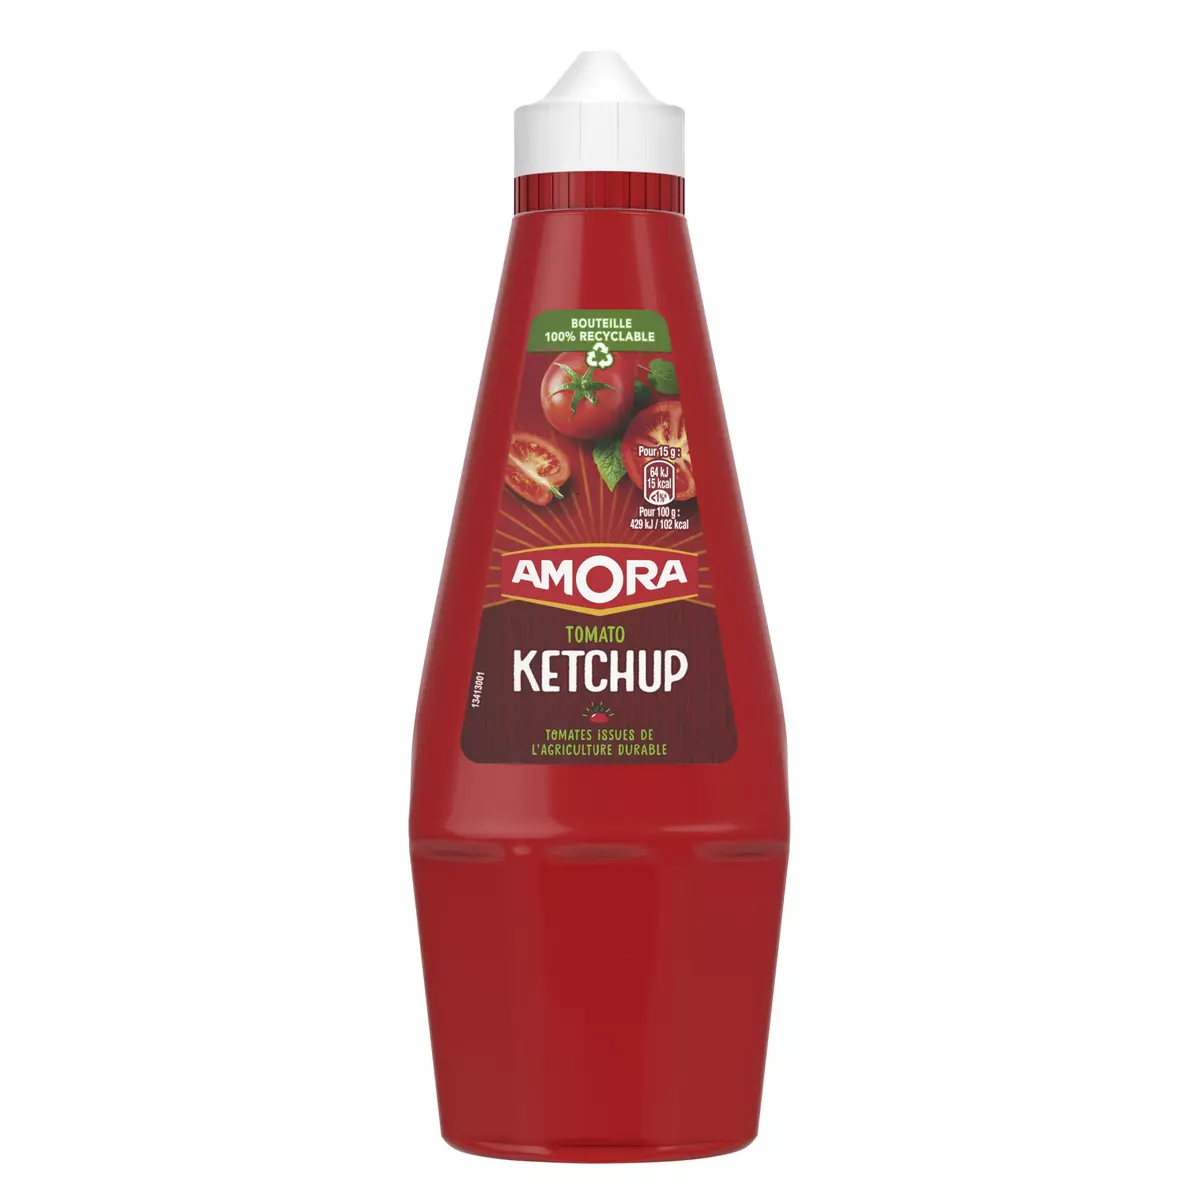 AMORA Tomato ketchup sans conservateur flacon souple 575g